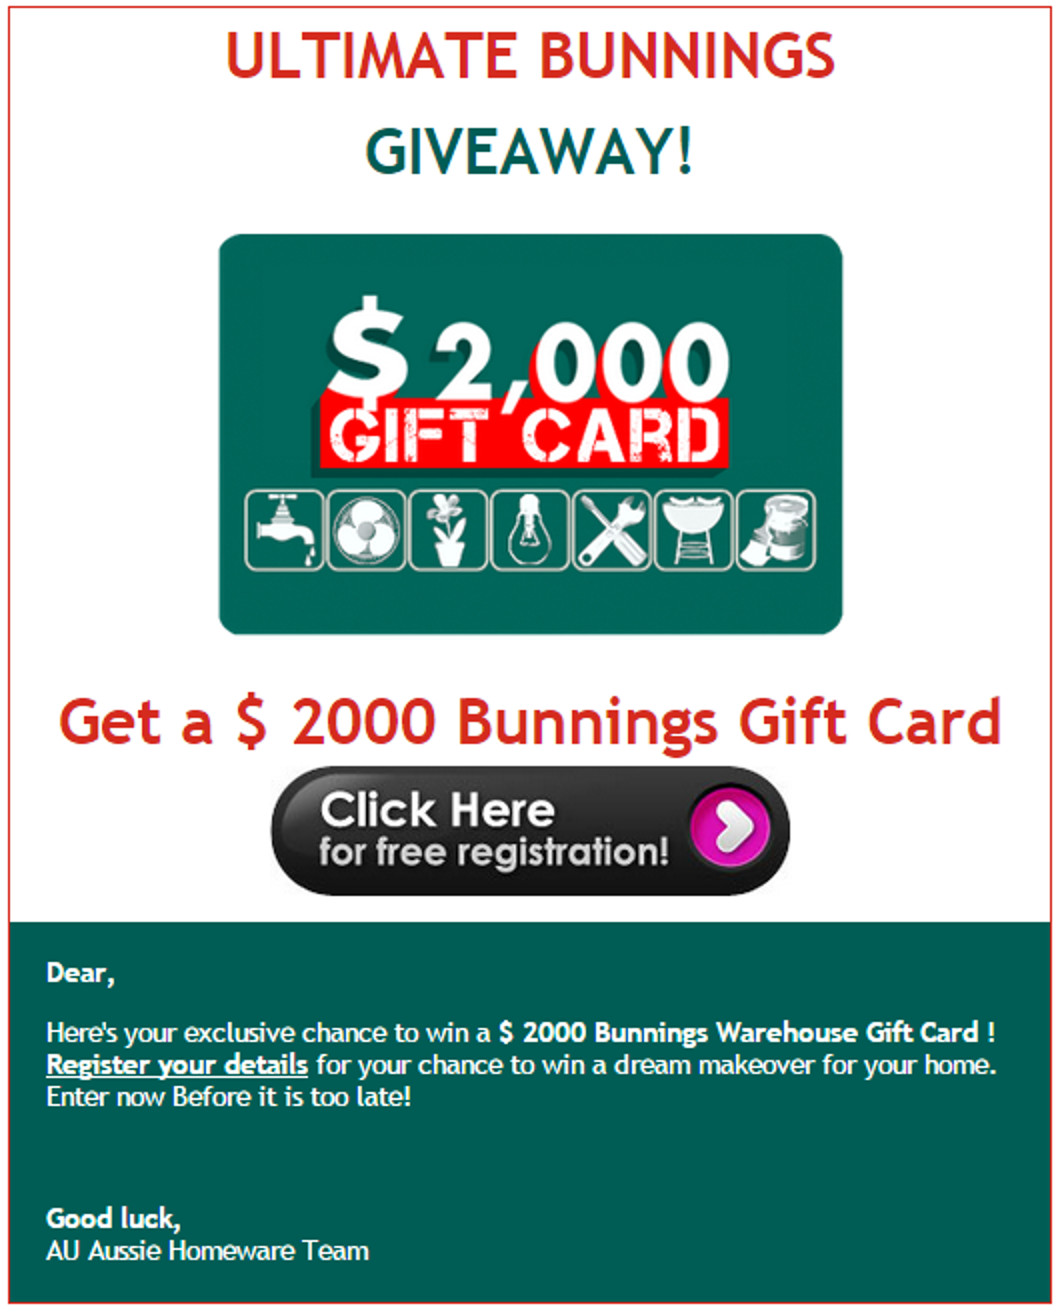 Bunnings gift voucher phishing scam MailShark